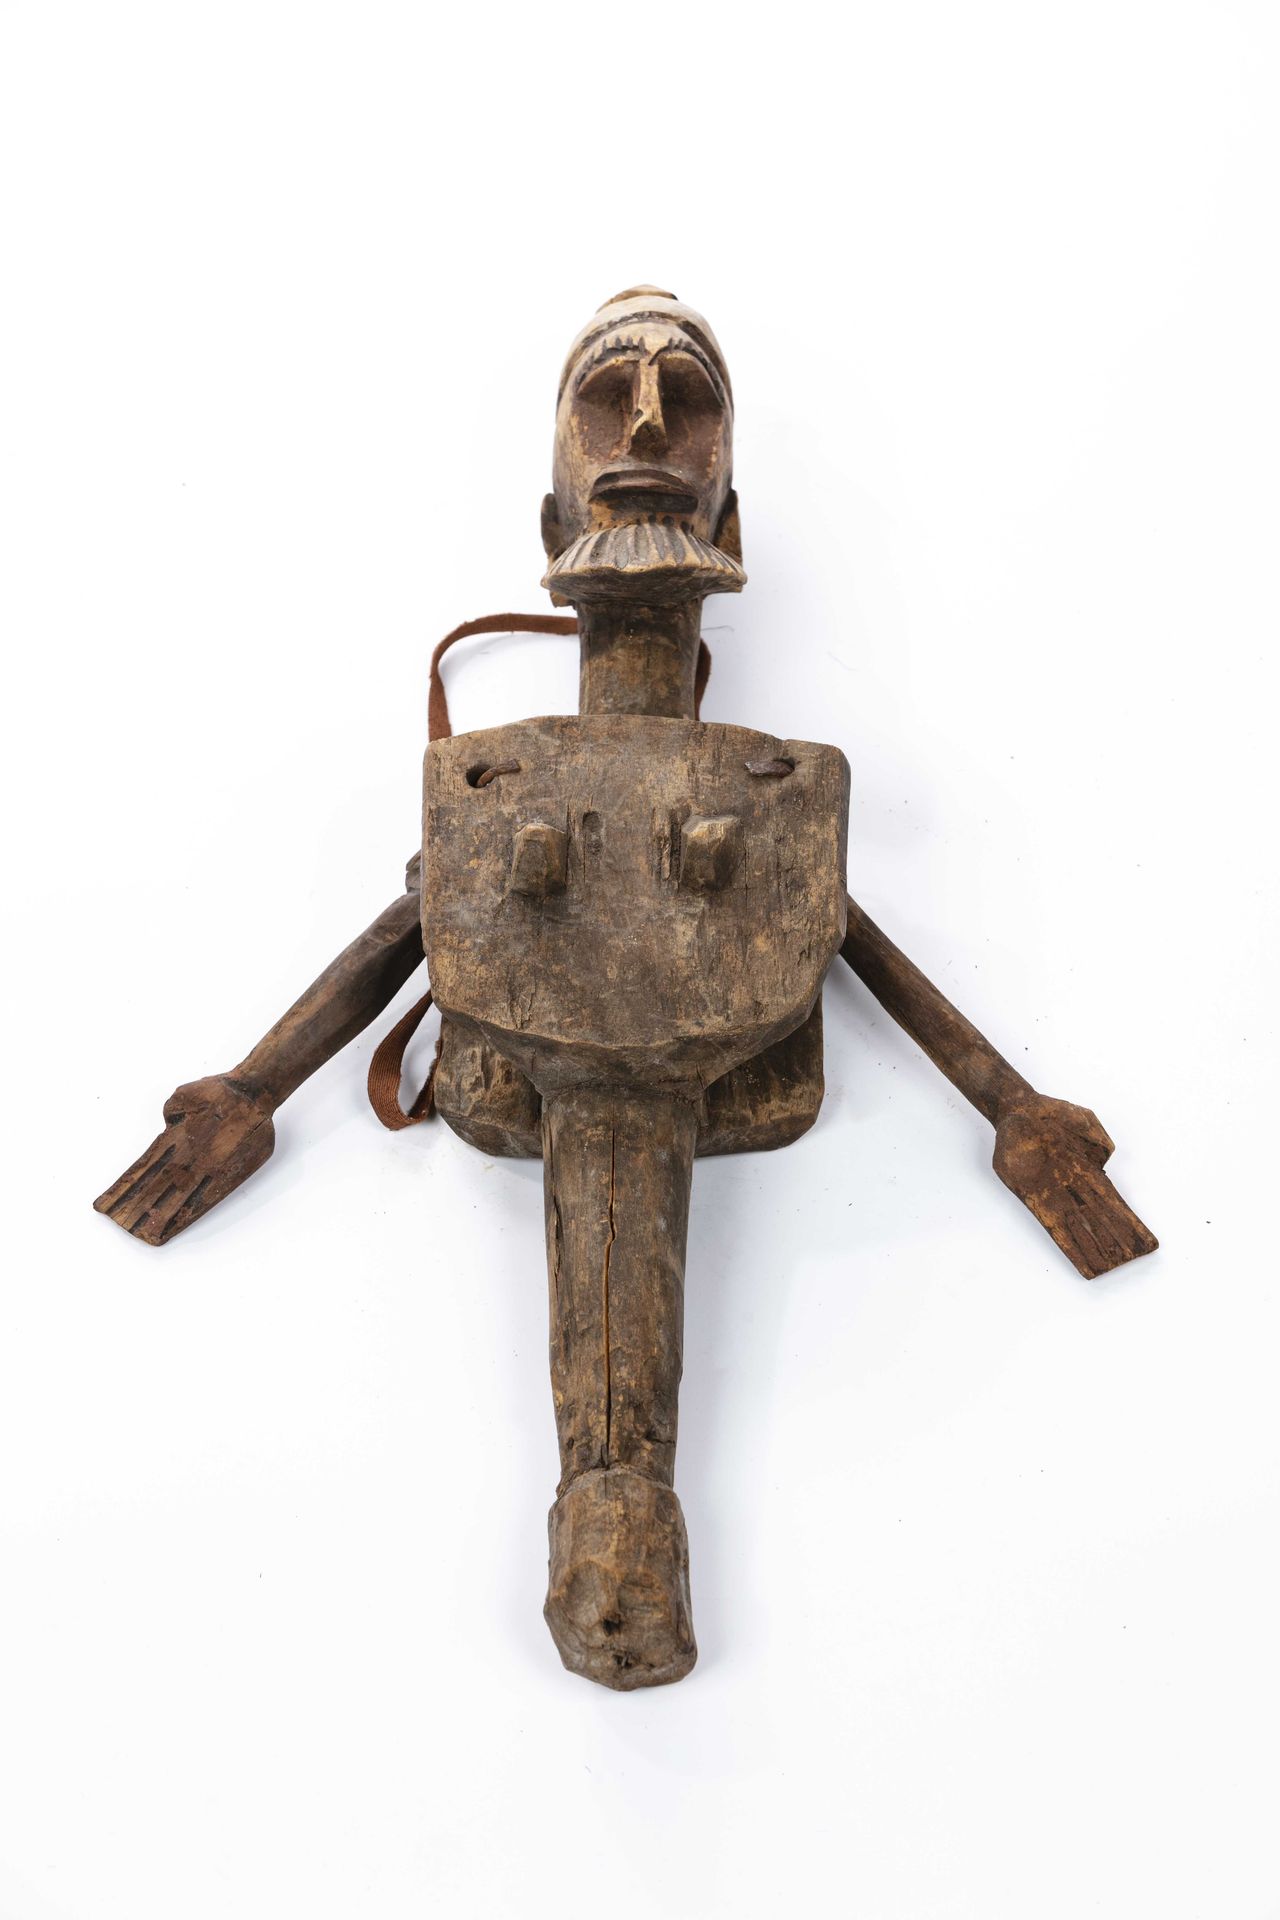 Null Marioneta Bozo, estilo Bambara
Mali
Madera, cuerda
Altura: 41 cm
La parte s&hellip;